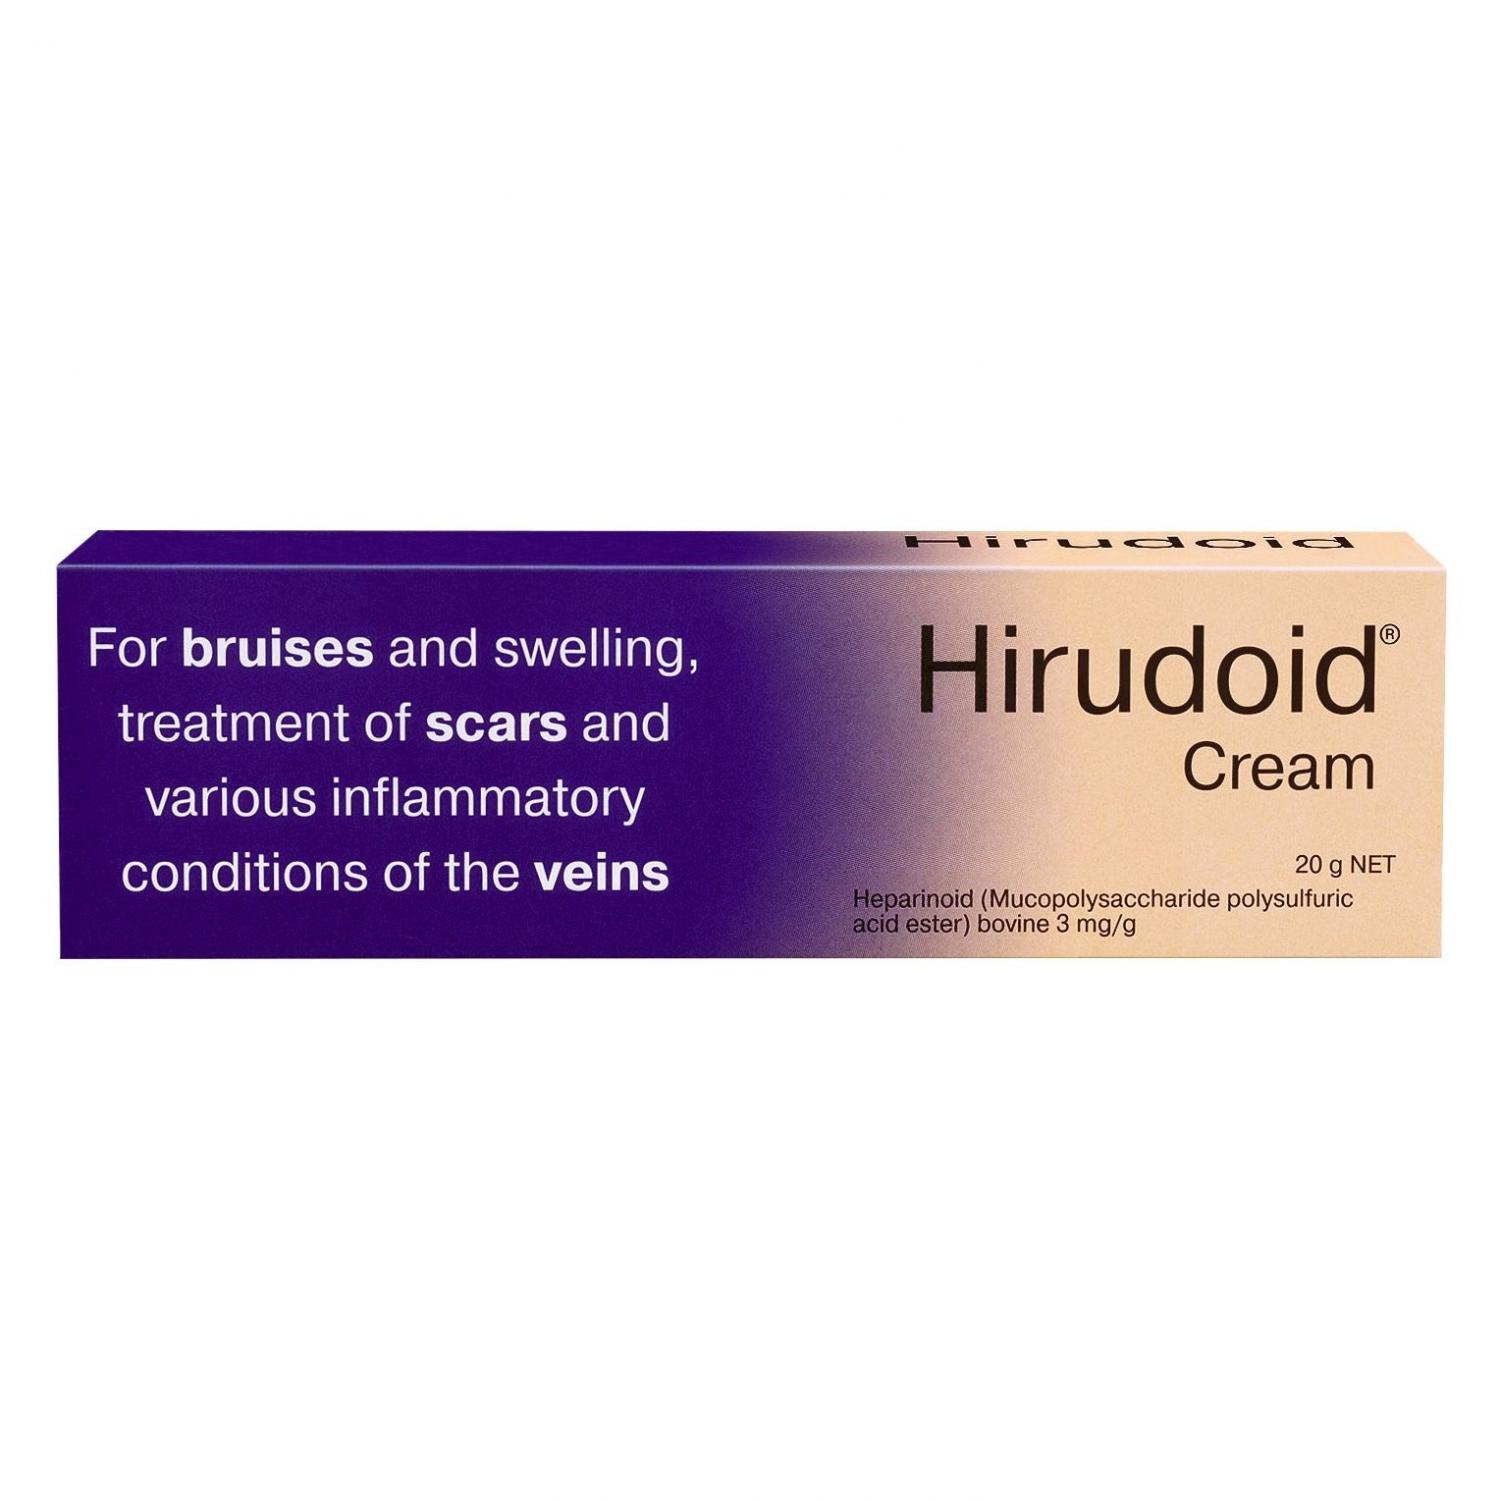 Image 1 for Hirudoid Cream 20g